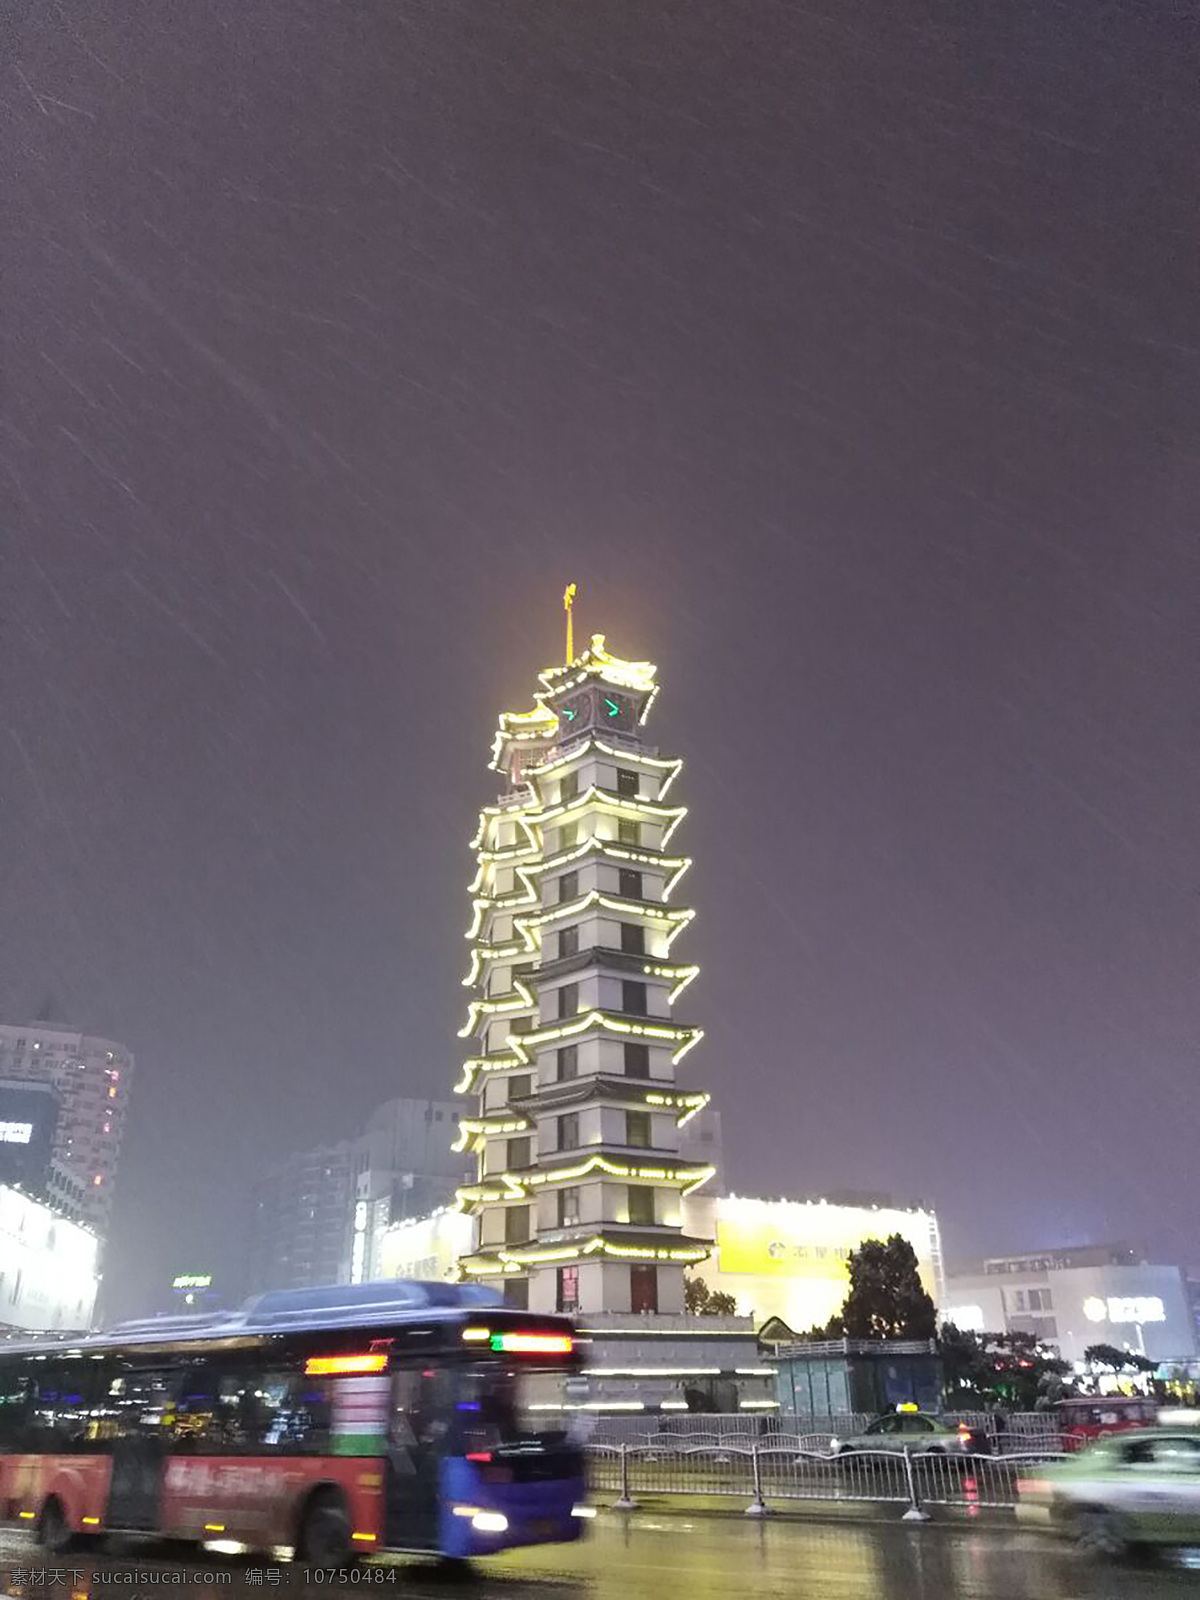 风雪 中 二 七 塔 郑州 二七塔 夜晚 夜景 建筑园林 建筑摄影